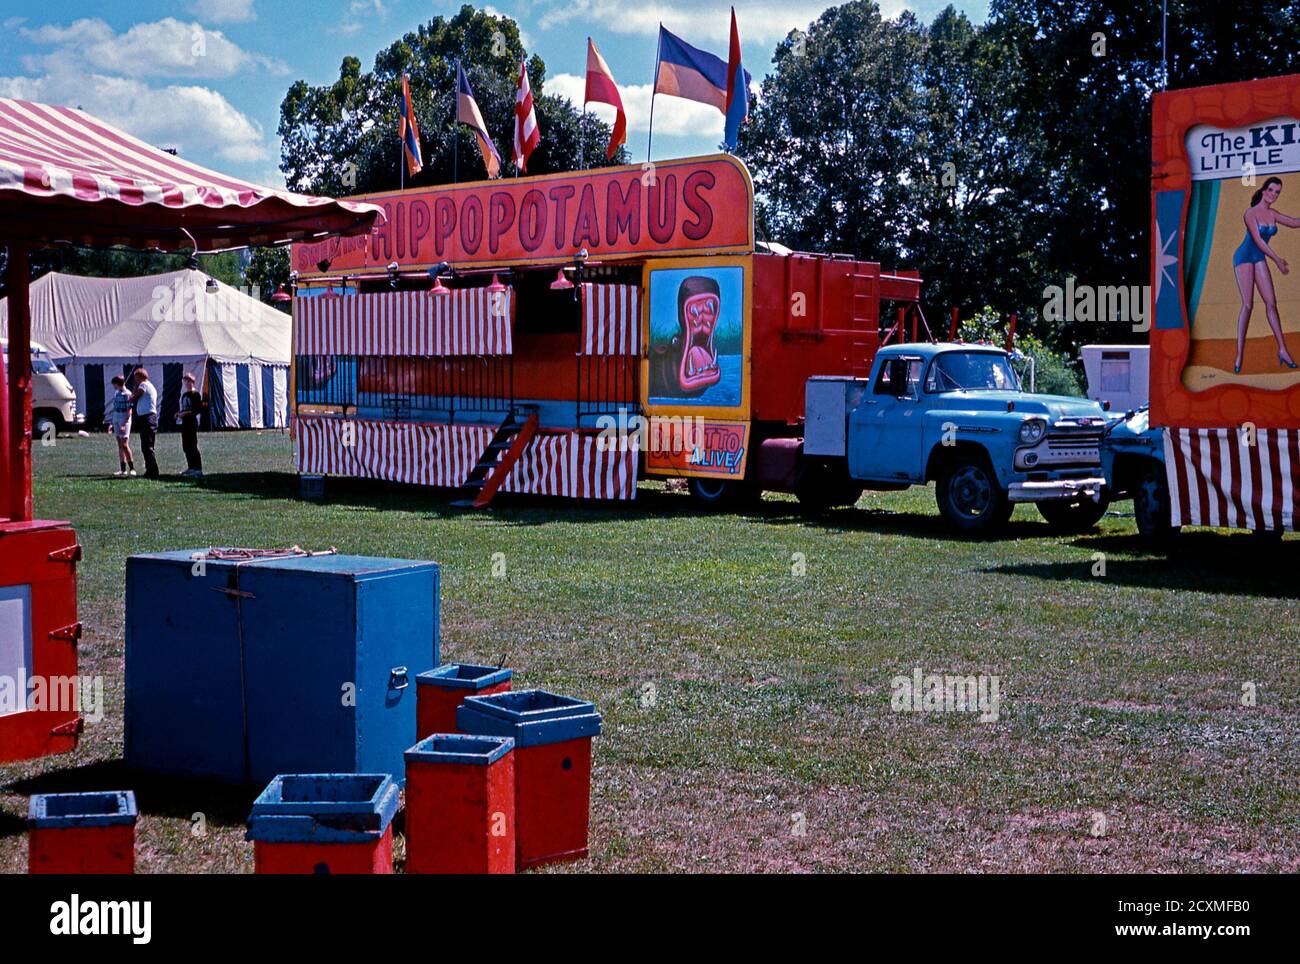 Ein Vintage-Foto der Nebenschauplatz-Gasse am Clyde Beatty Cole Bros Brothers Combined Circus, USA um 1960. Die Attraktion ist Big Otto, der lebende Hippopotamus. Das bemalte Werbematerial wird jetzt als Volkskunst betrachtet. Dieses Bild ist von einem alten amerikanischen Amateur Kodak Farbtransparenz. Stockfoto